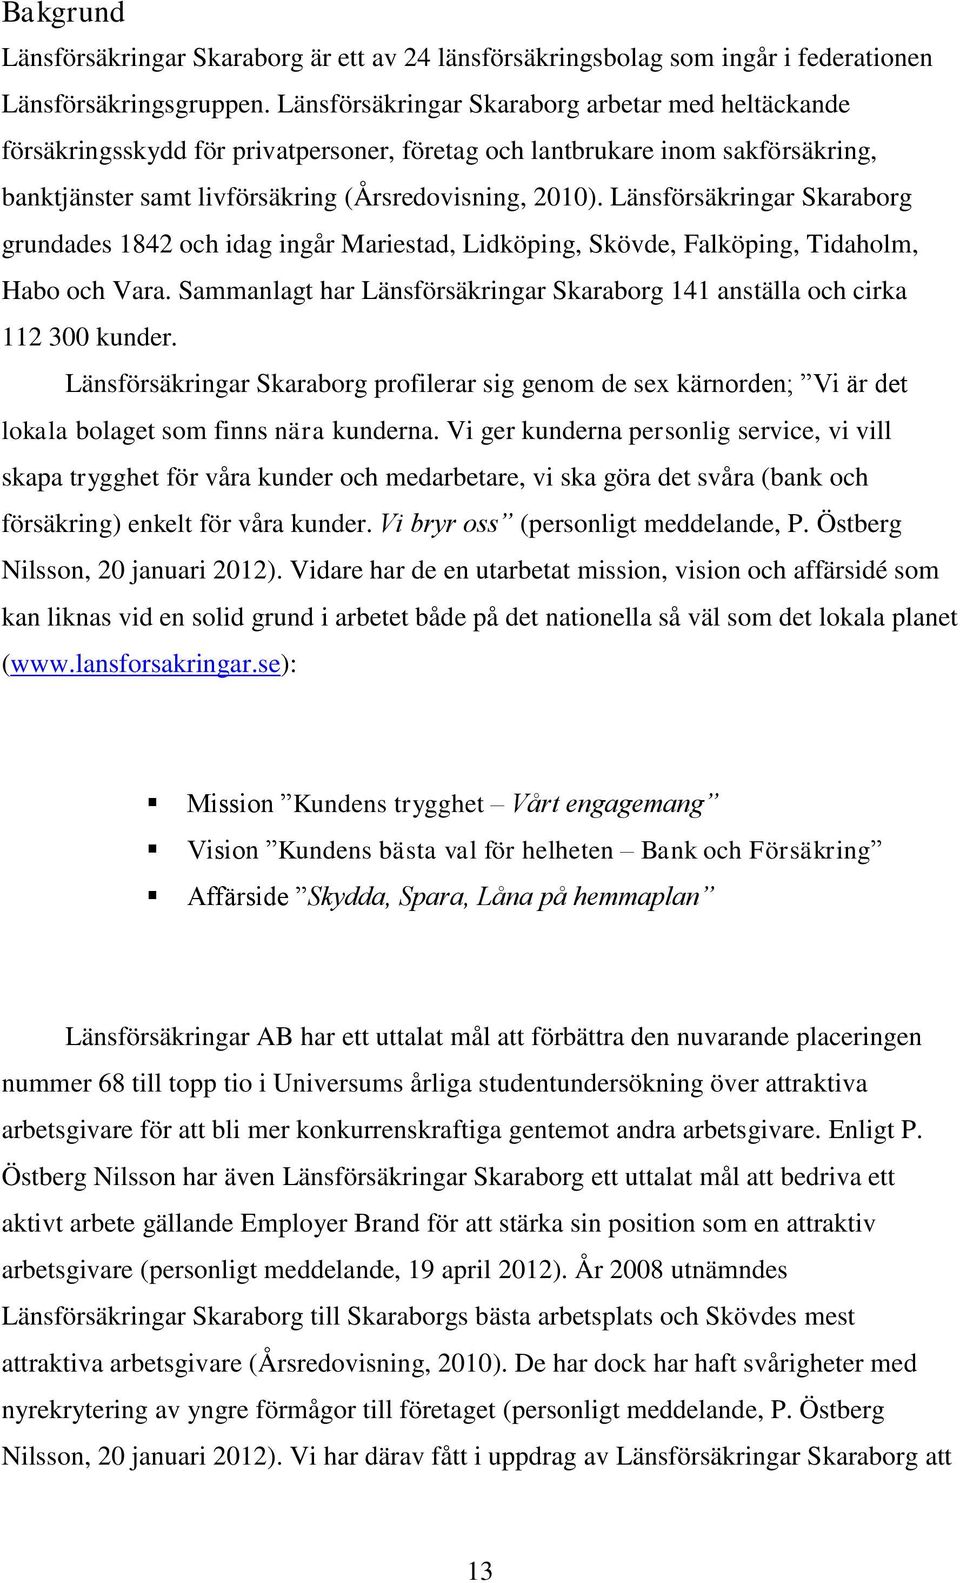 Länsförsäkringar Skaraborg grundades 1842 och idag ingår Mariestad, Lidköping, Skövde, Falköping, Tidaholm, Habo och Vara.